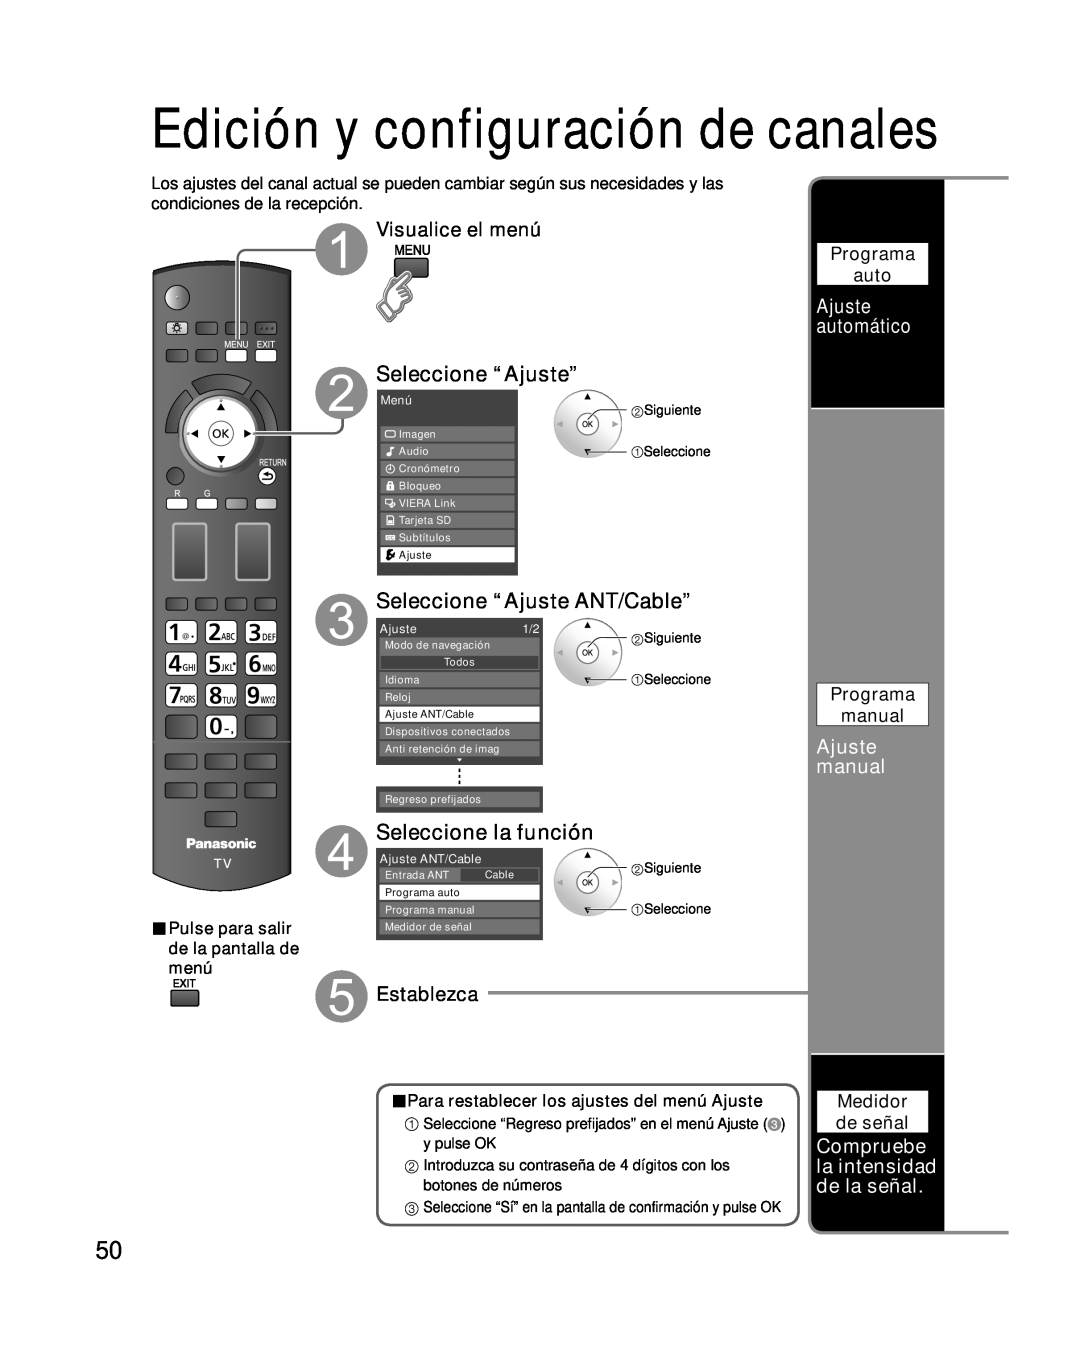 Panasonic TC-P46G10 Seleccione “Ajuste ANT/Cable”, Seleccione la función, Visualice el menú, Establezca, Ajuste manual 